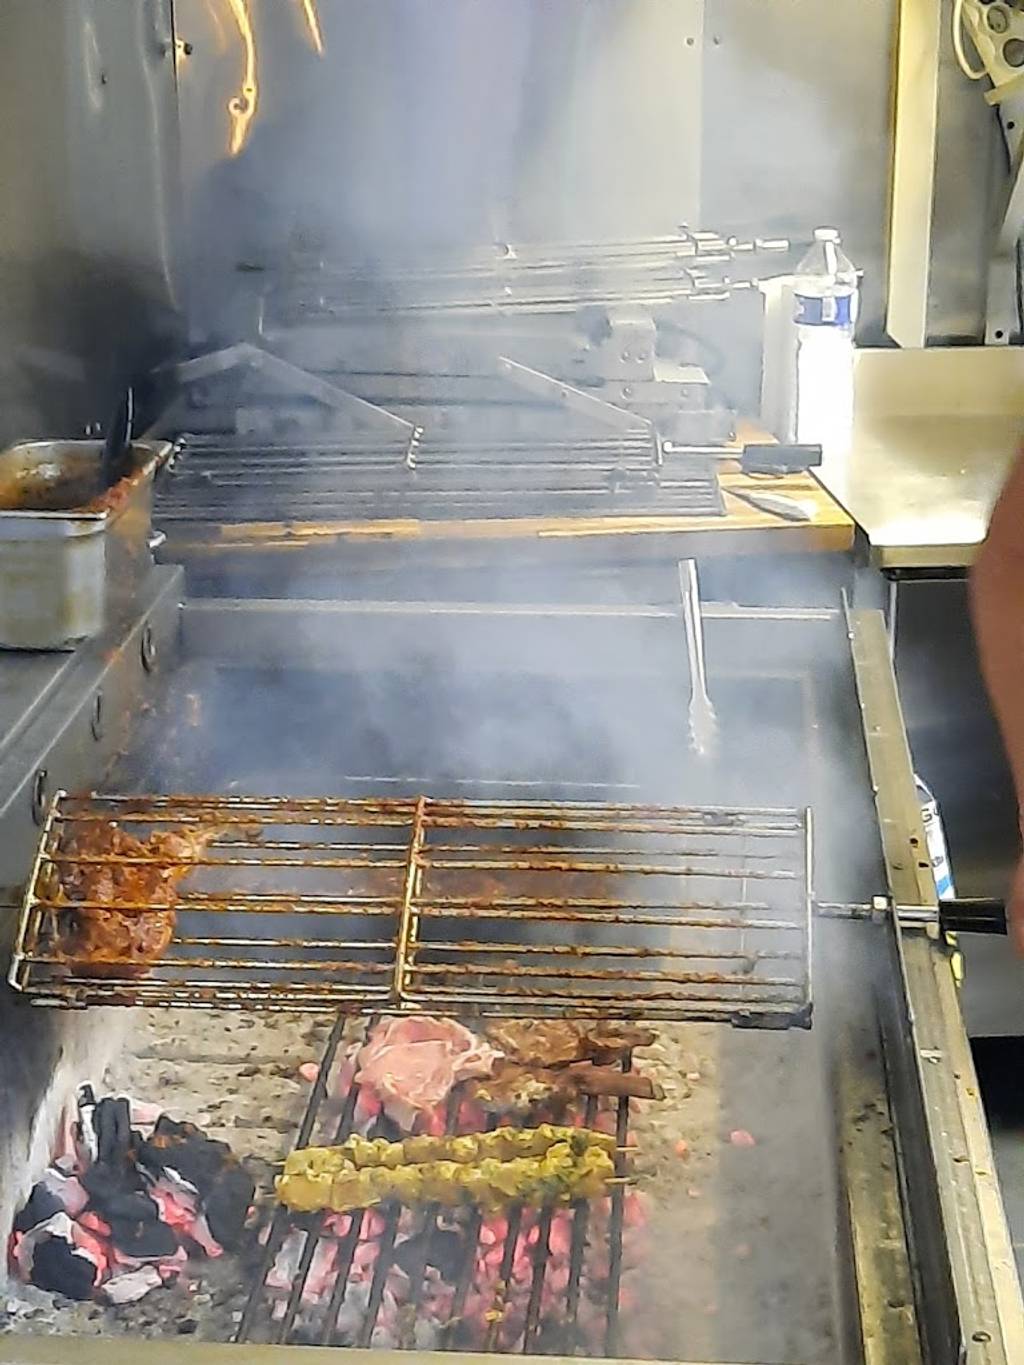 La Brochette Dorée | Restaurant grill 94 | Restaurant grillades halal 94 Grillades Ivry-sur-Seine - Food Cuisine Cooking Kitchen appliance Roasting